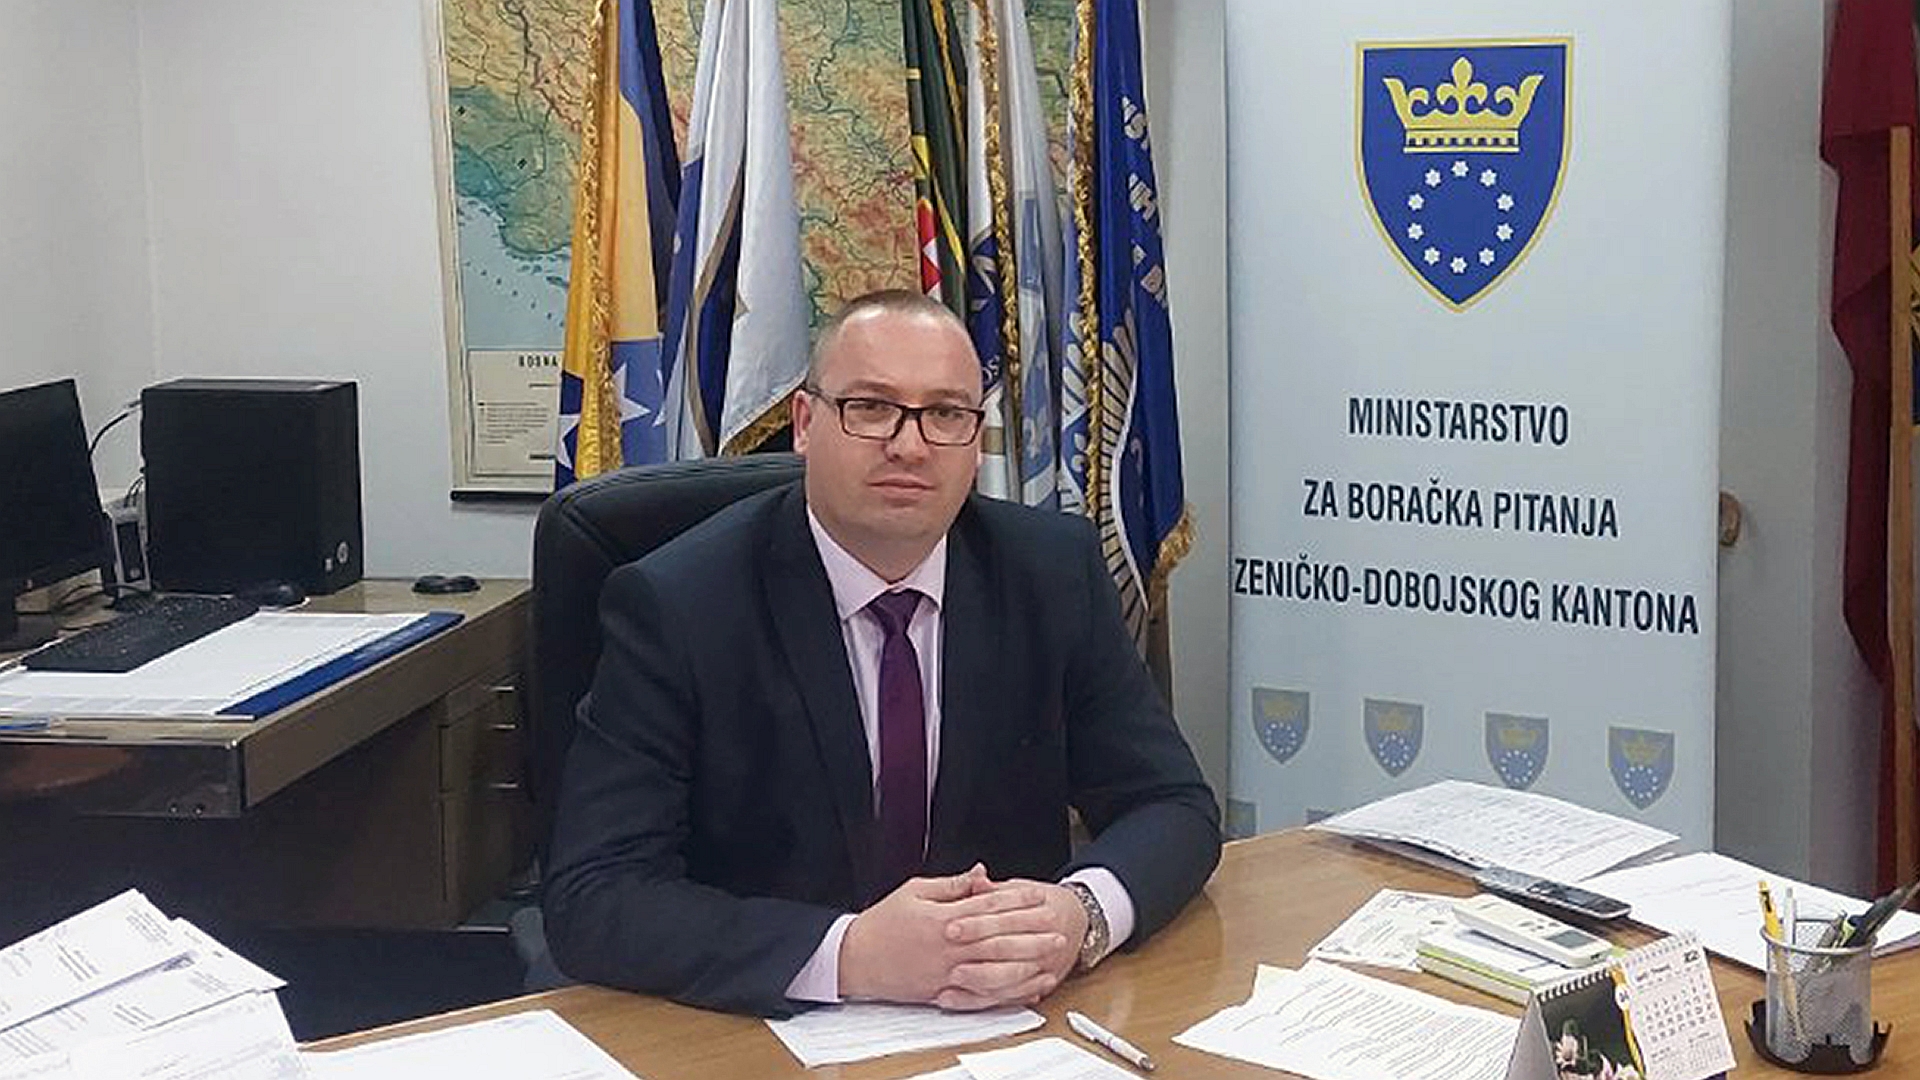 Adnan Sirovica / Ministarstvo za boračka pitanja ZDK